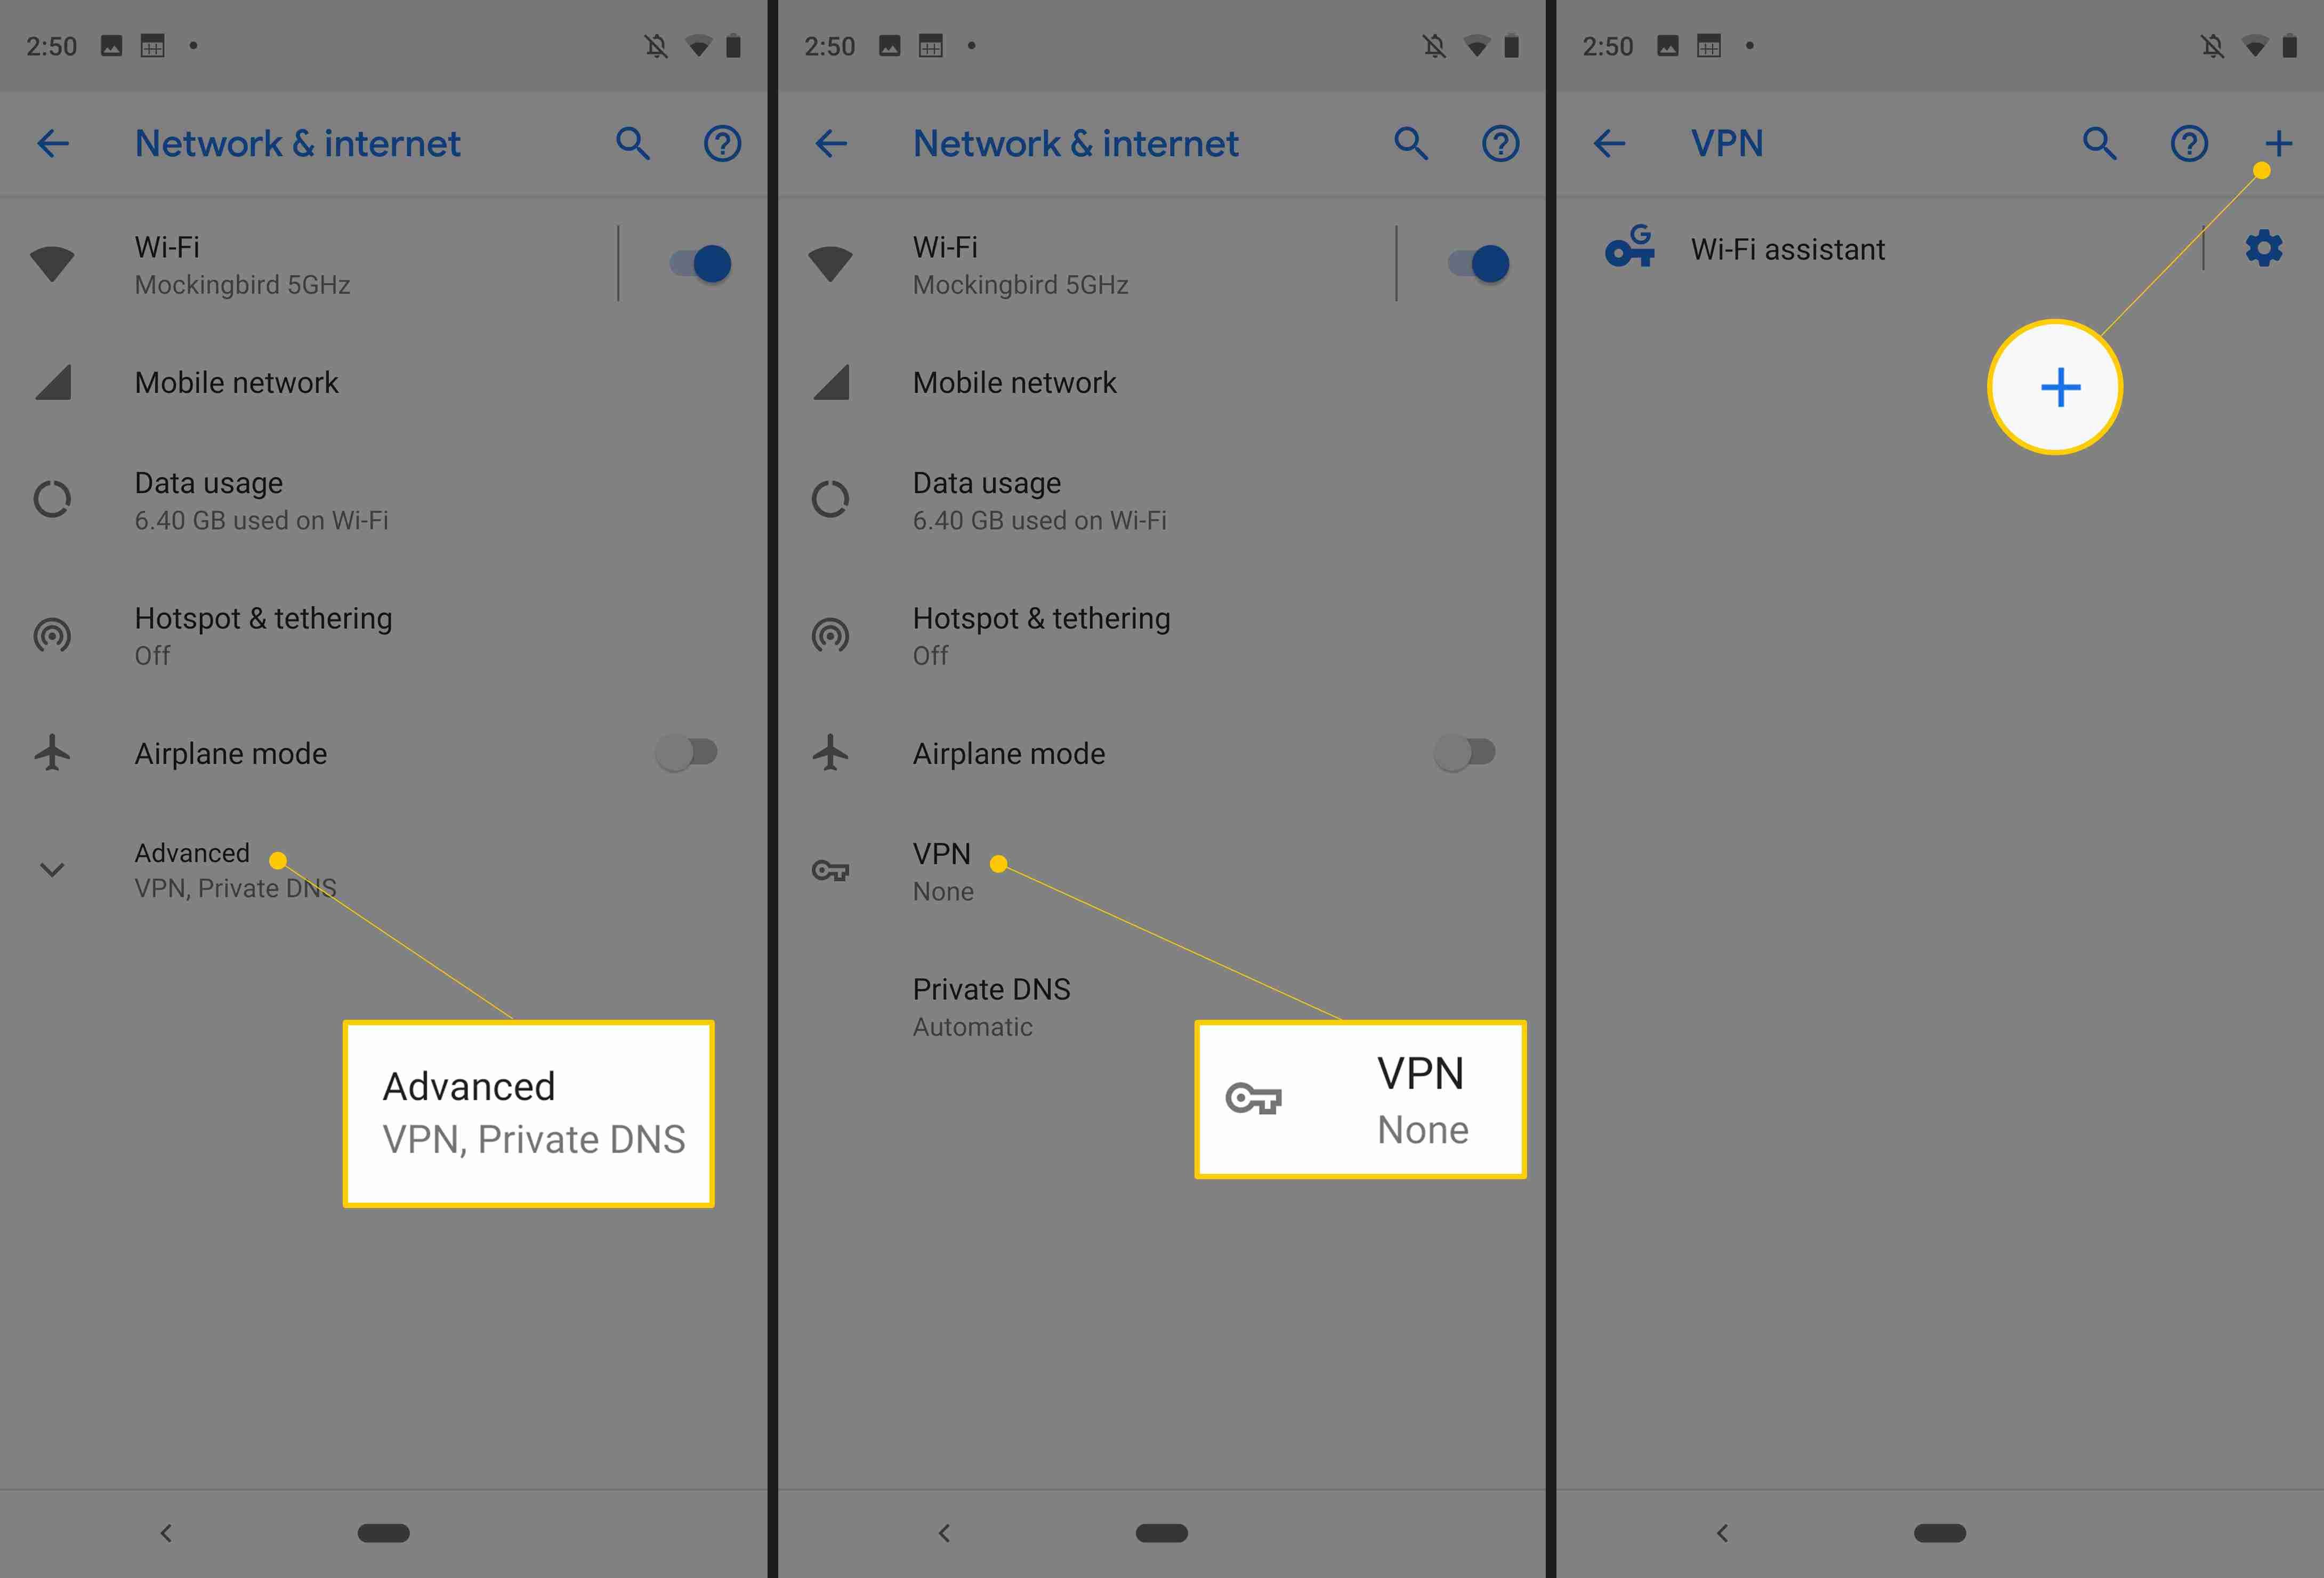 Три экрана Android от устройства Samsung с кнопками Advanced, VPN и Plus